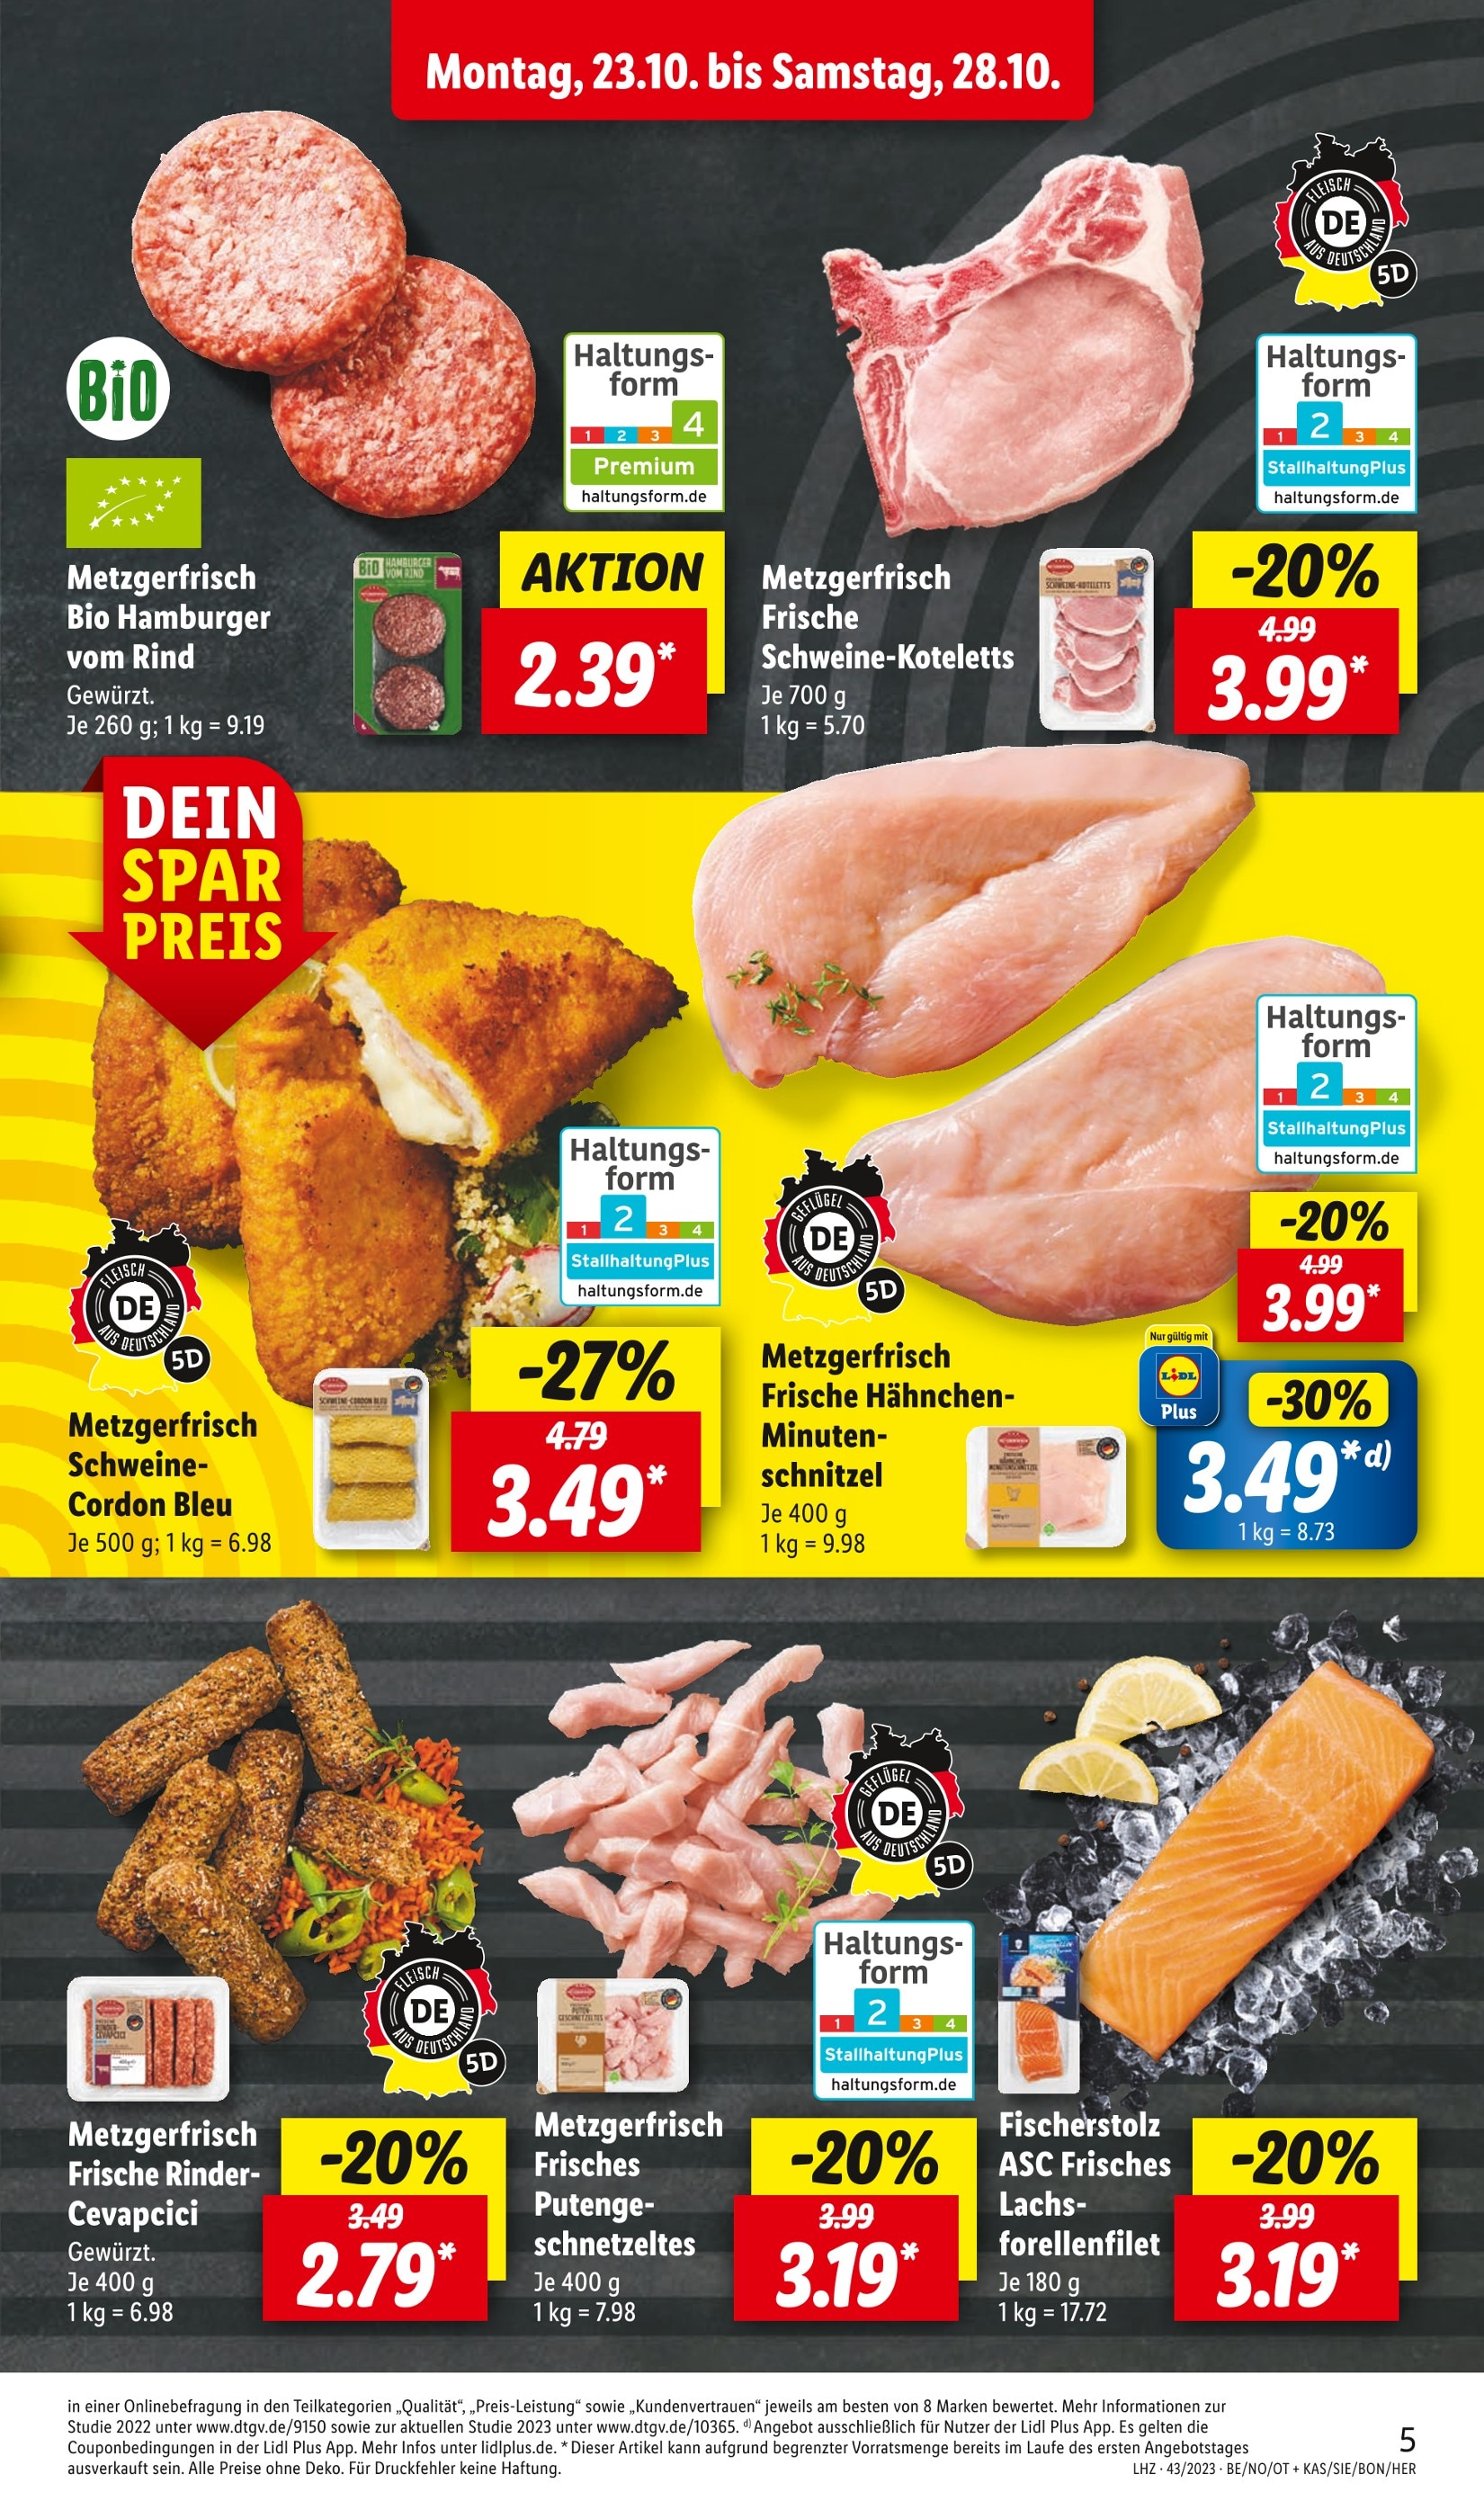 Hackfleisch kaufen in Zwickau - günstige in Zwickau Angebote